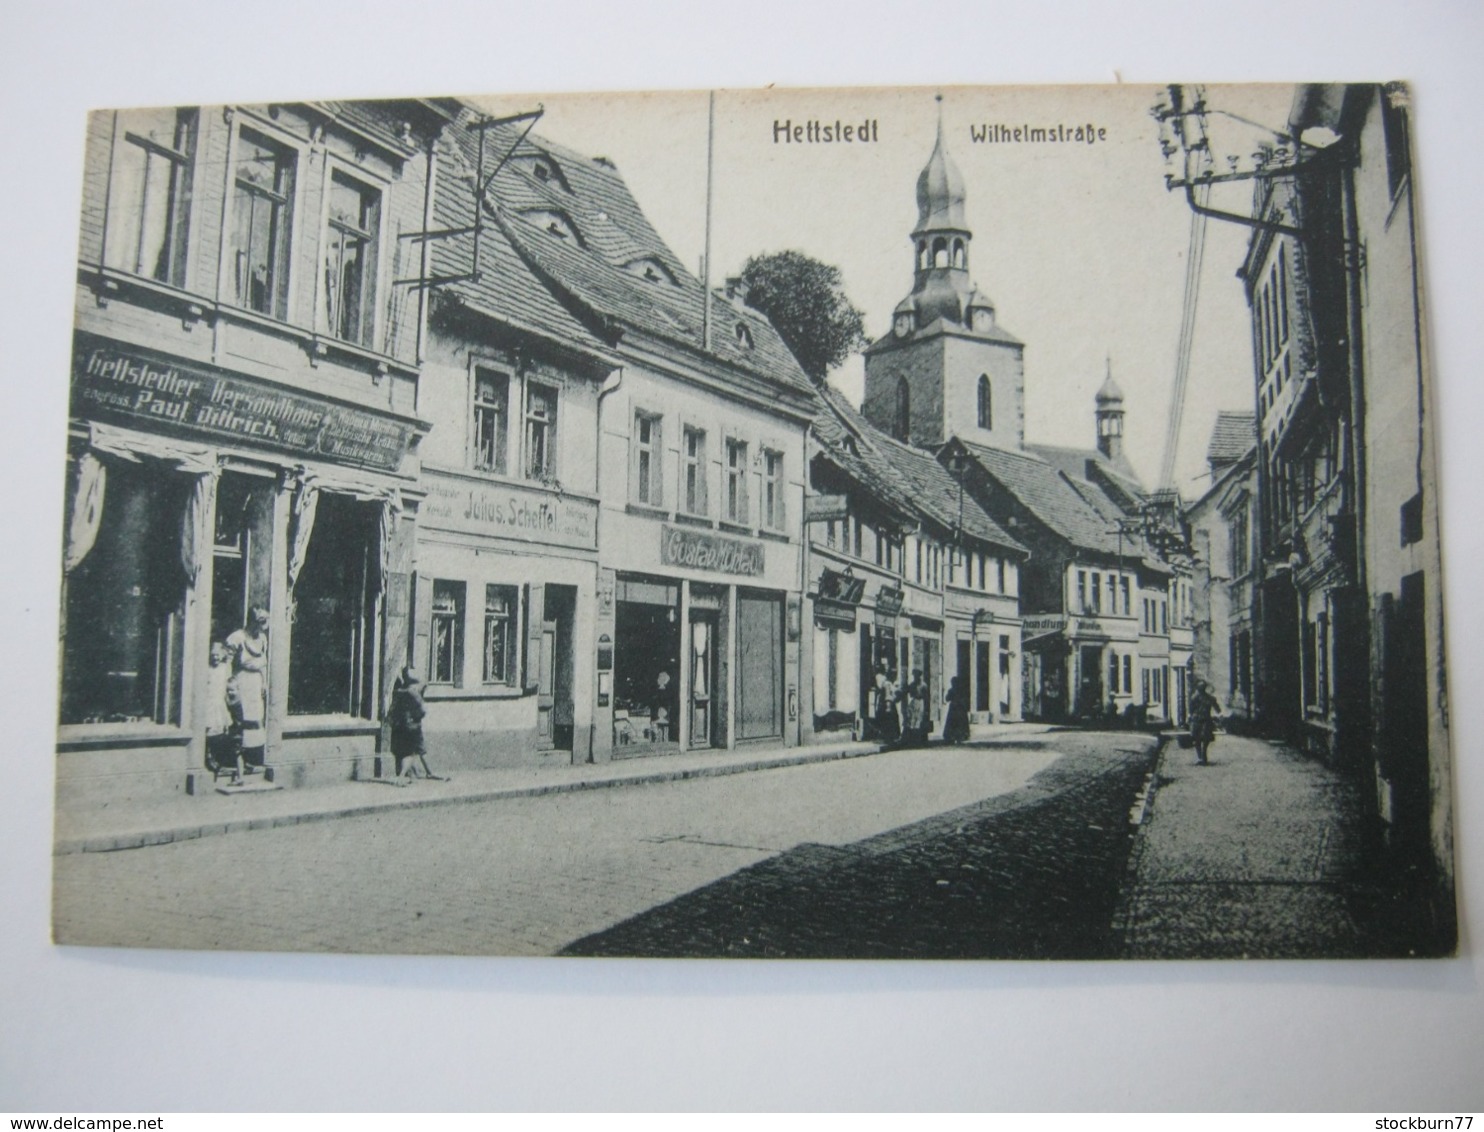 HETTSTEDT, Strasse, Seltene Karte Um 1920 Mit Marke + Stempel - Hettstedt